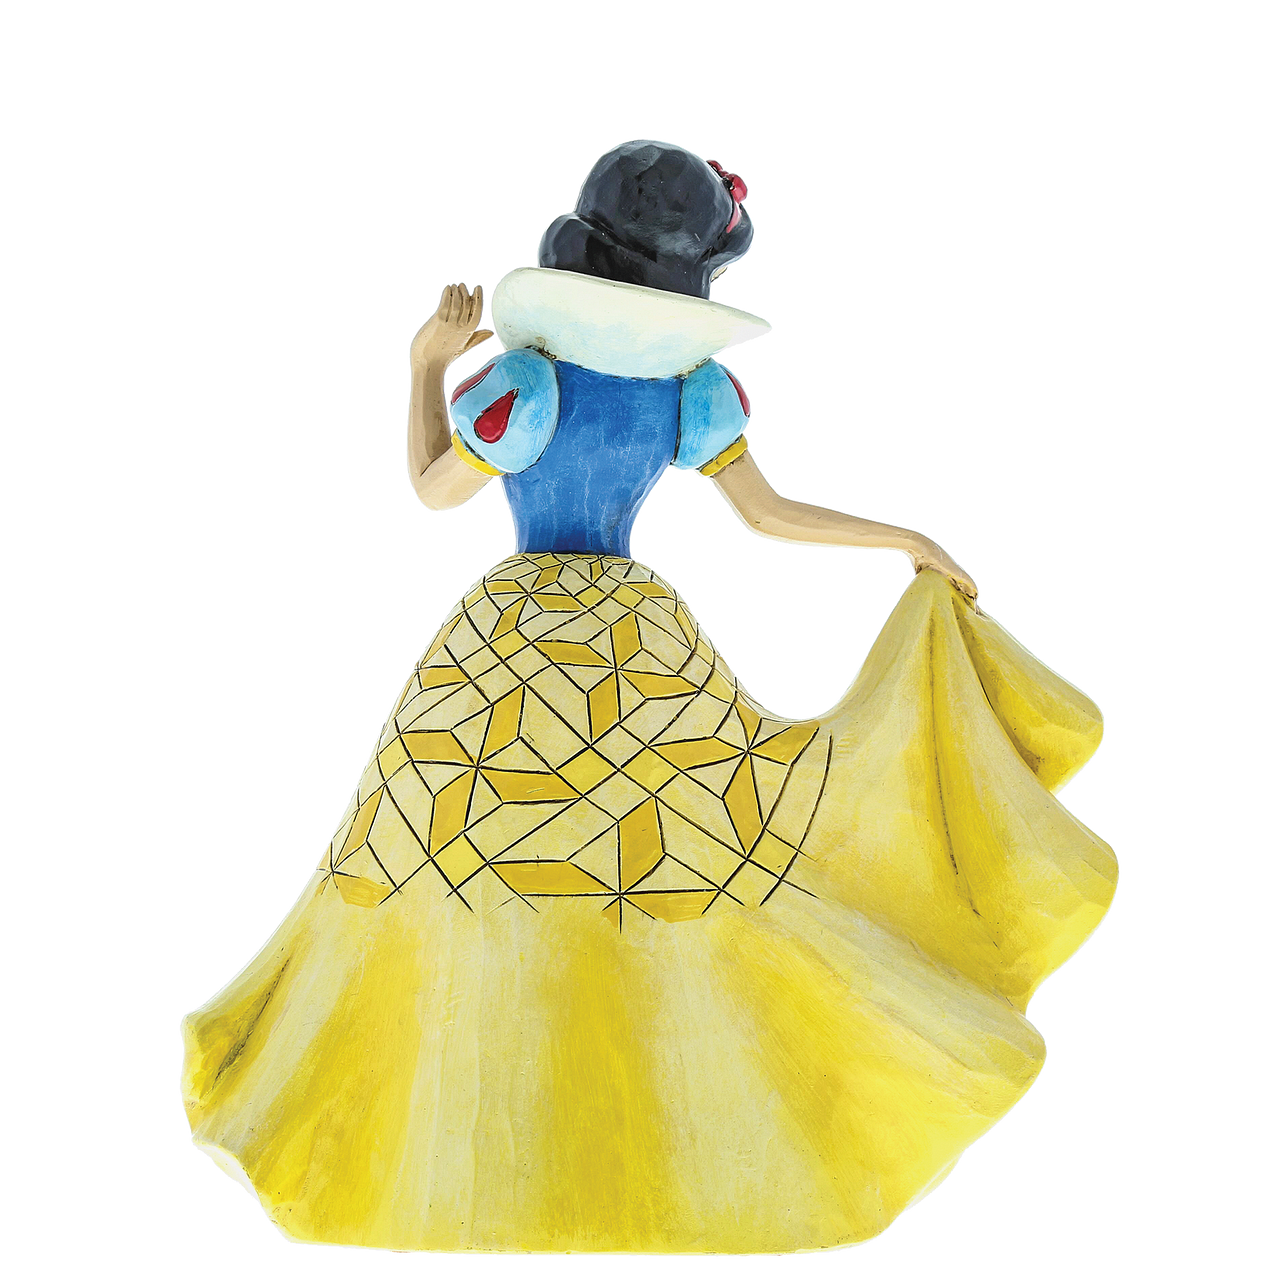 La nouvelle robe de la Princesse Disney Blanche Neige !